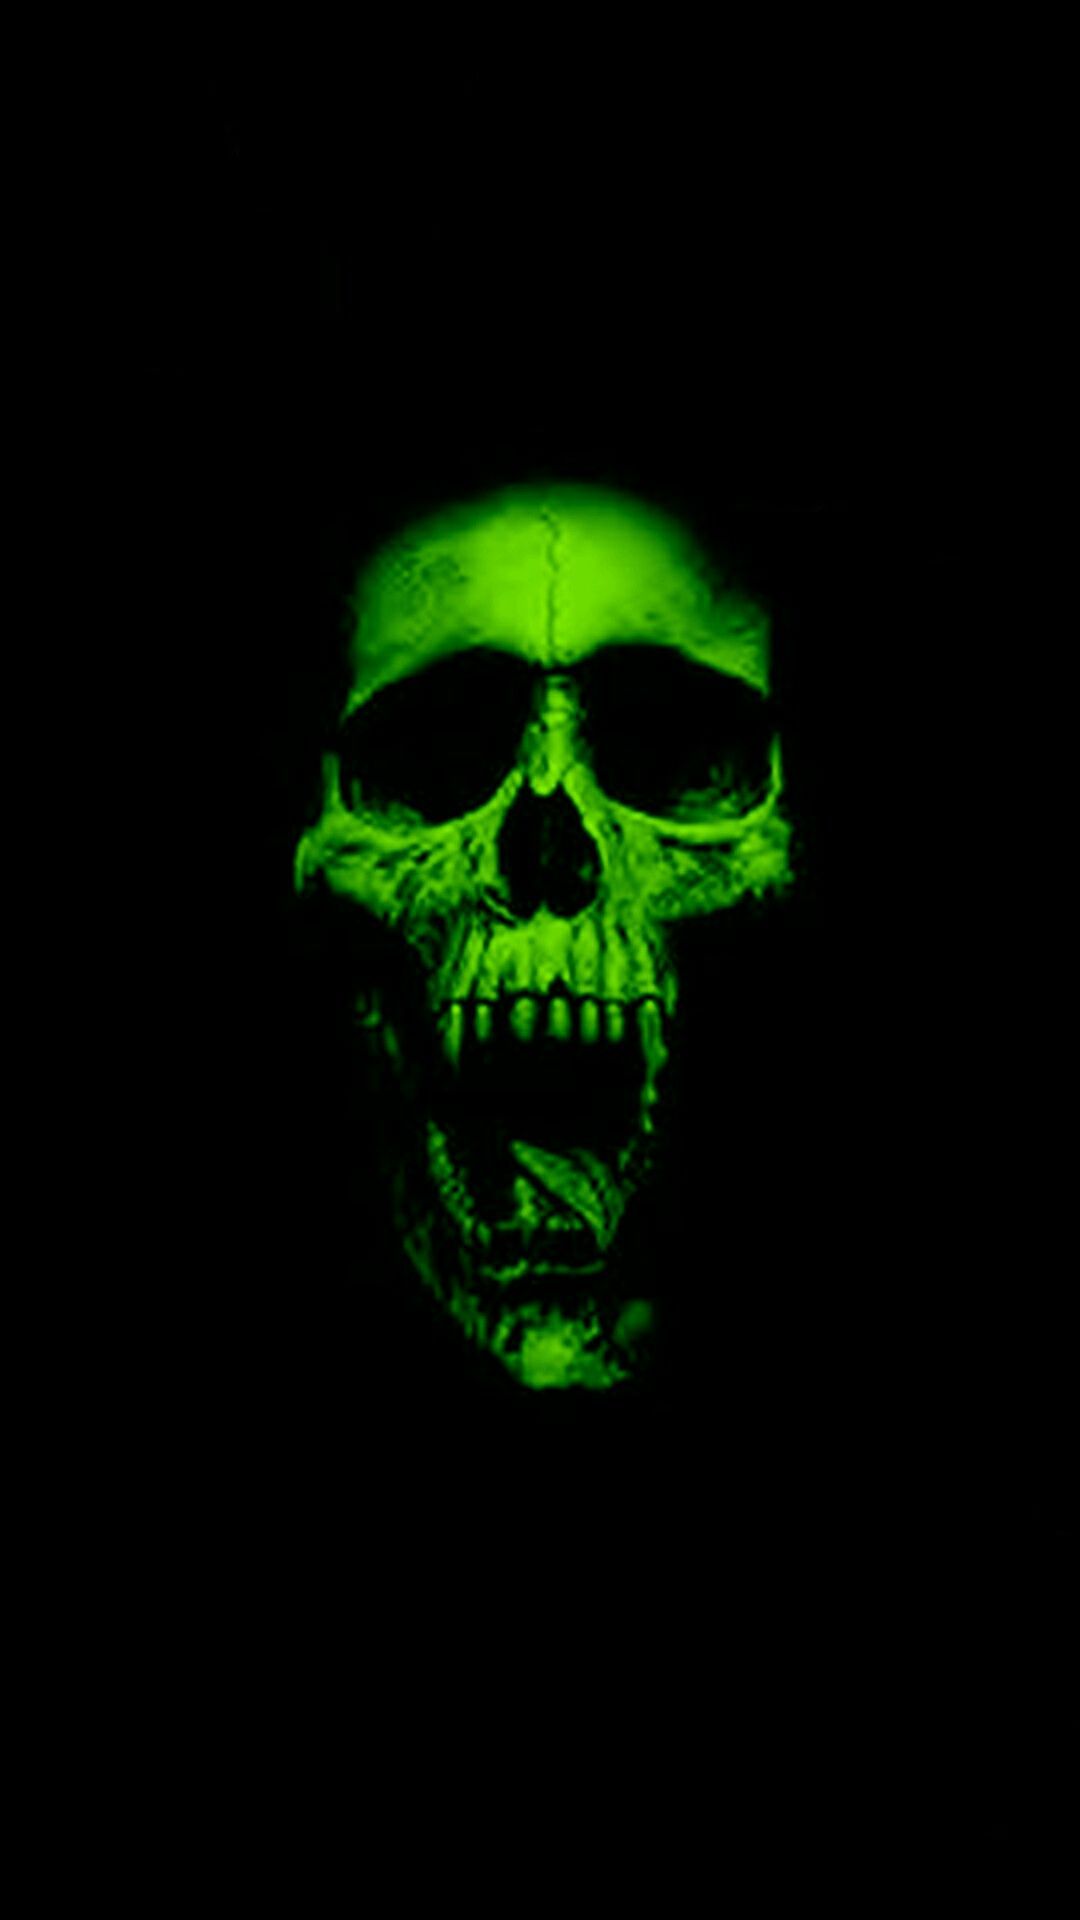 Kinh dị. Skull wallpaper, HD skull wallpaper, Skull wallpaper iphone